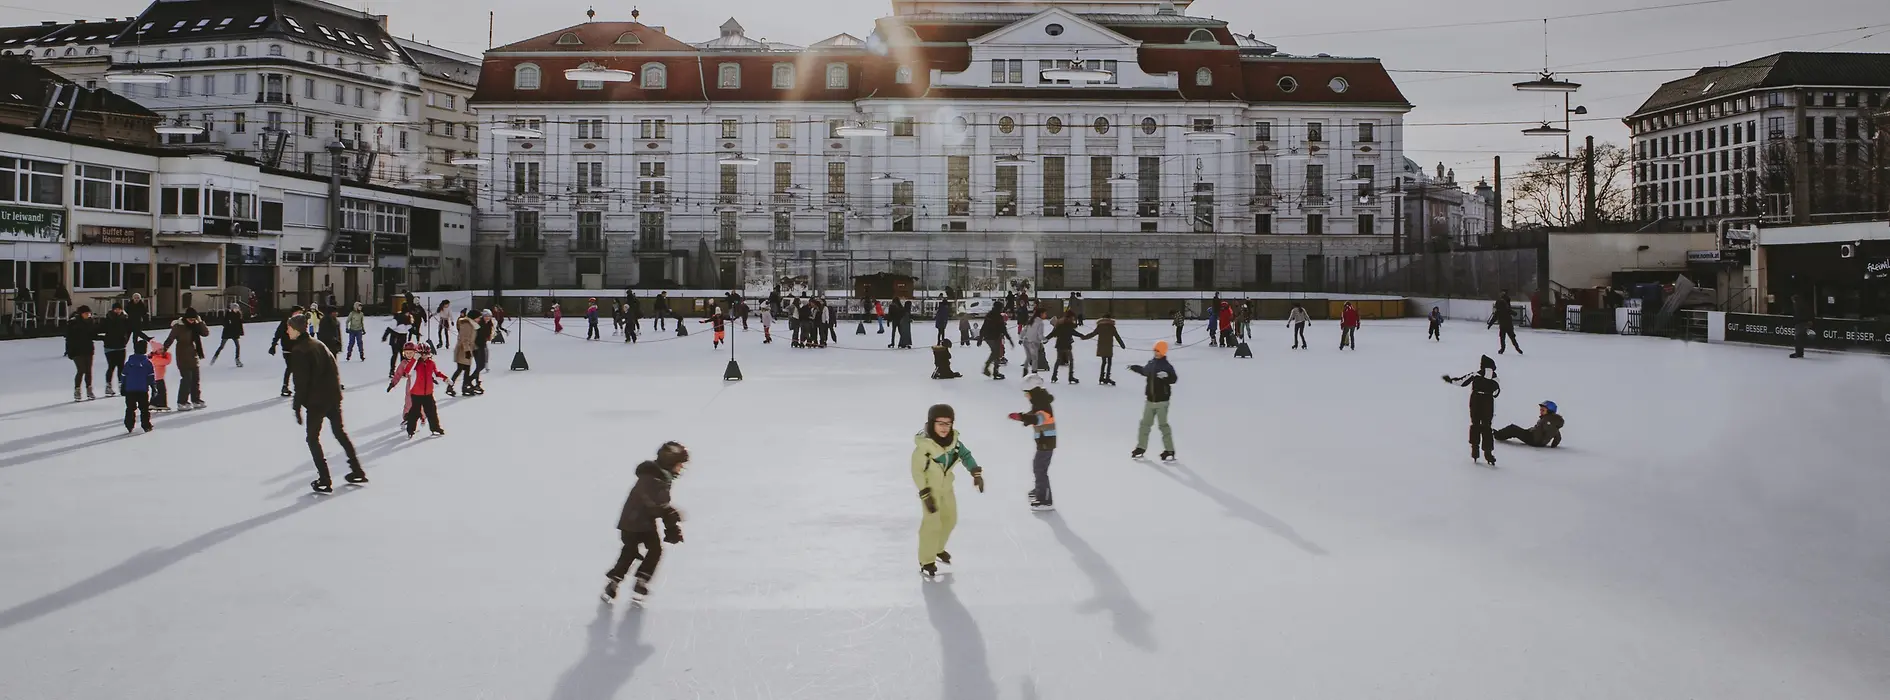 Vienna Ice Skating Club